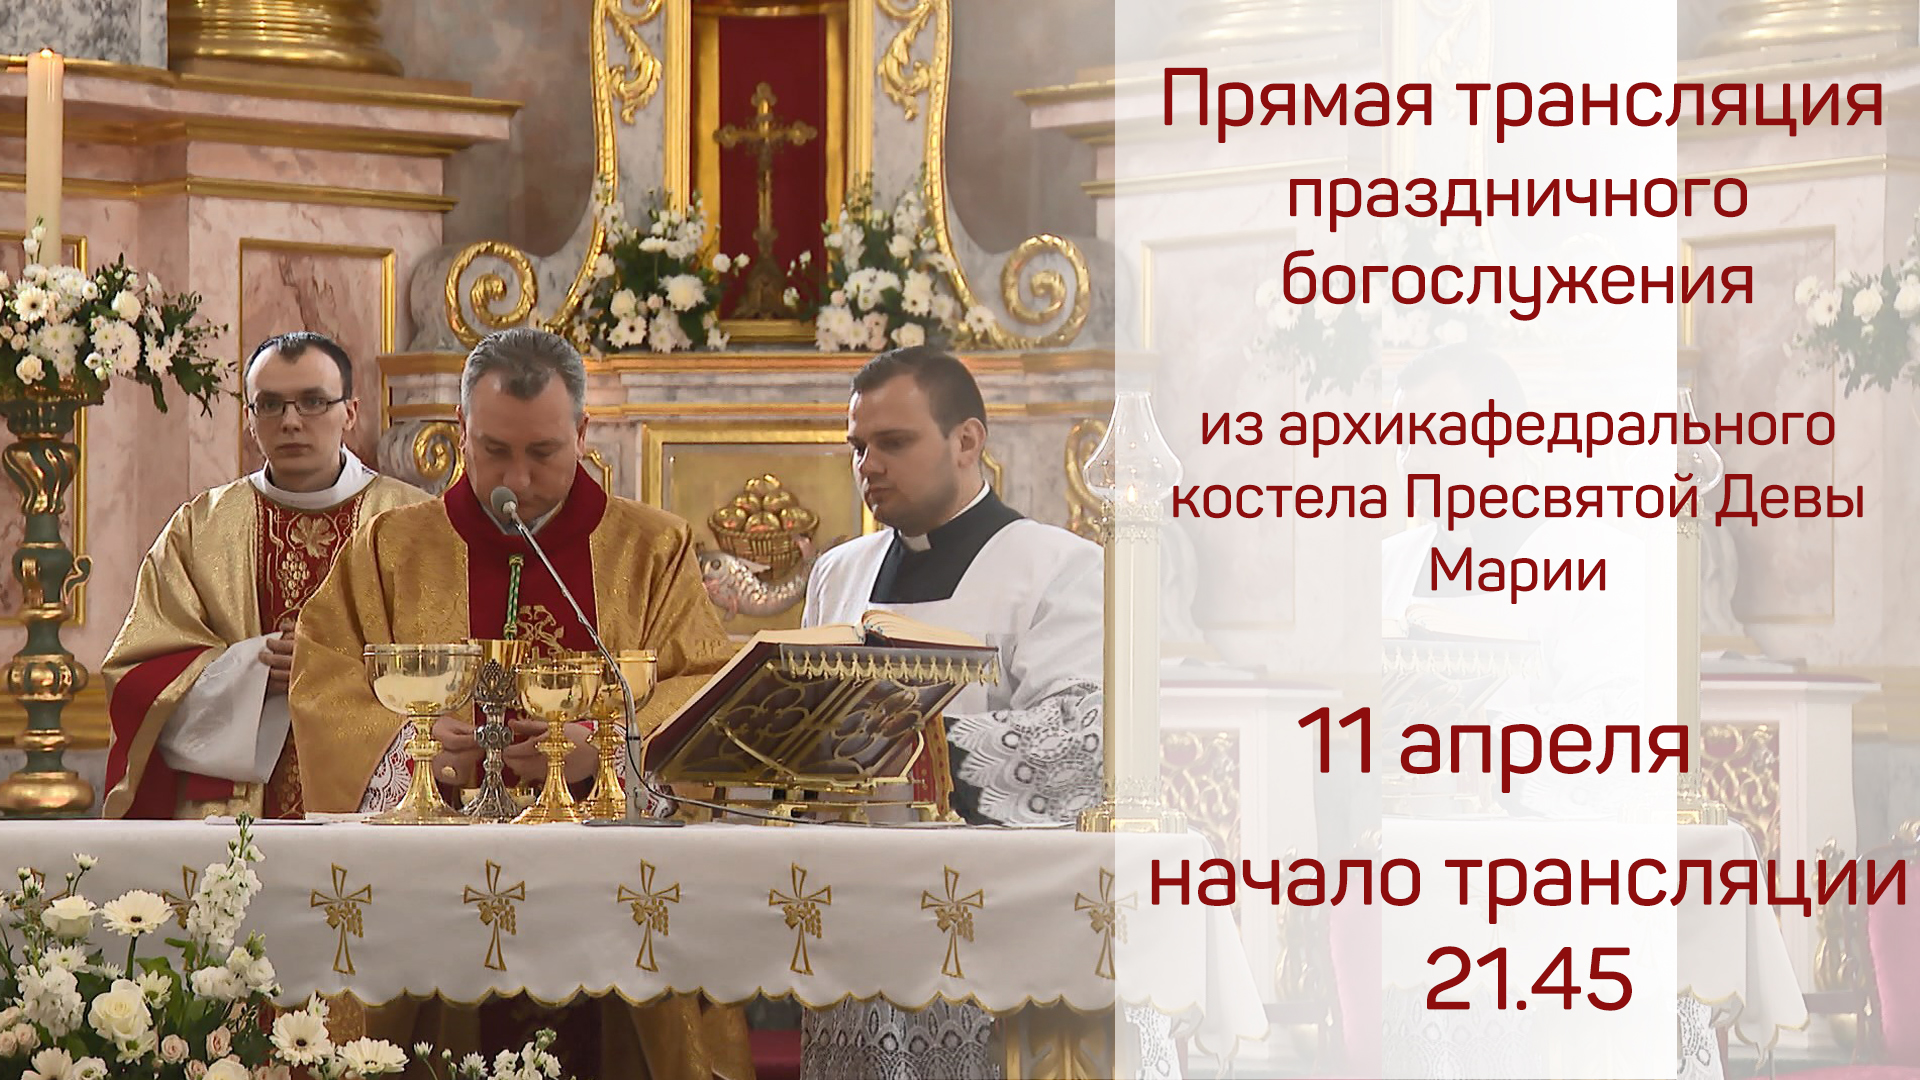 Прямая трансляция праздничного богослужения на католическую Пасху из архикафедрального костела Пресвятой Девы Марии в Минске